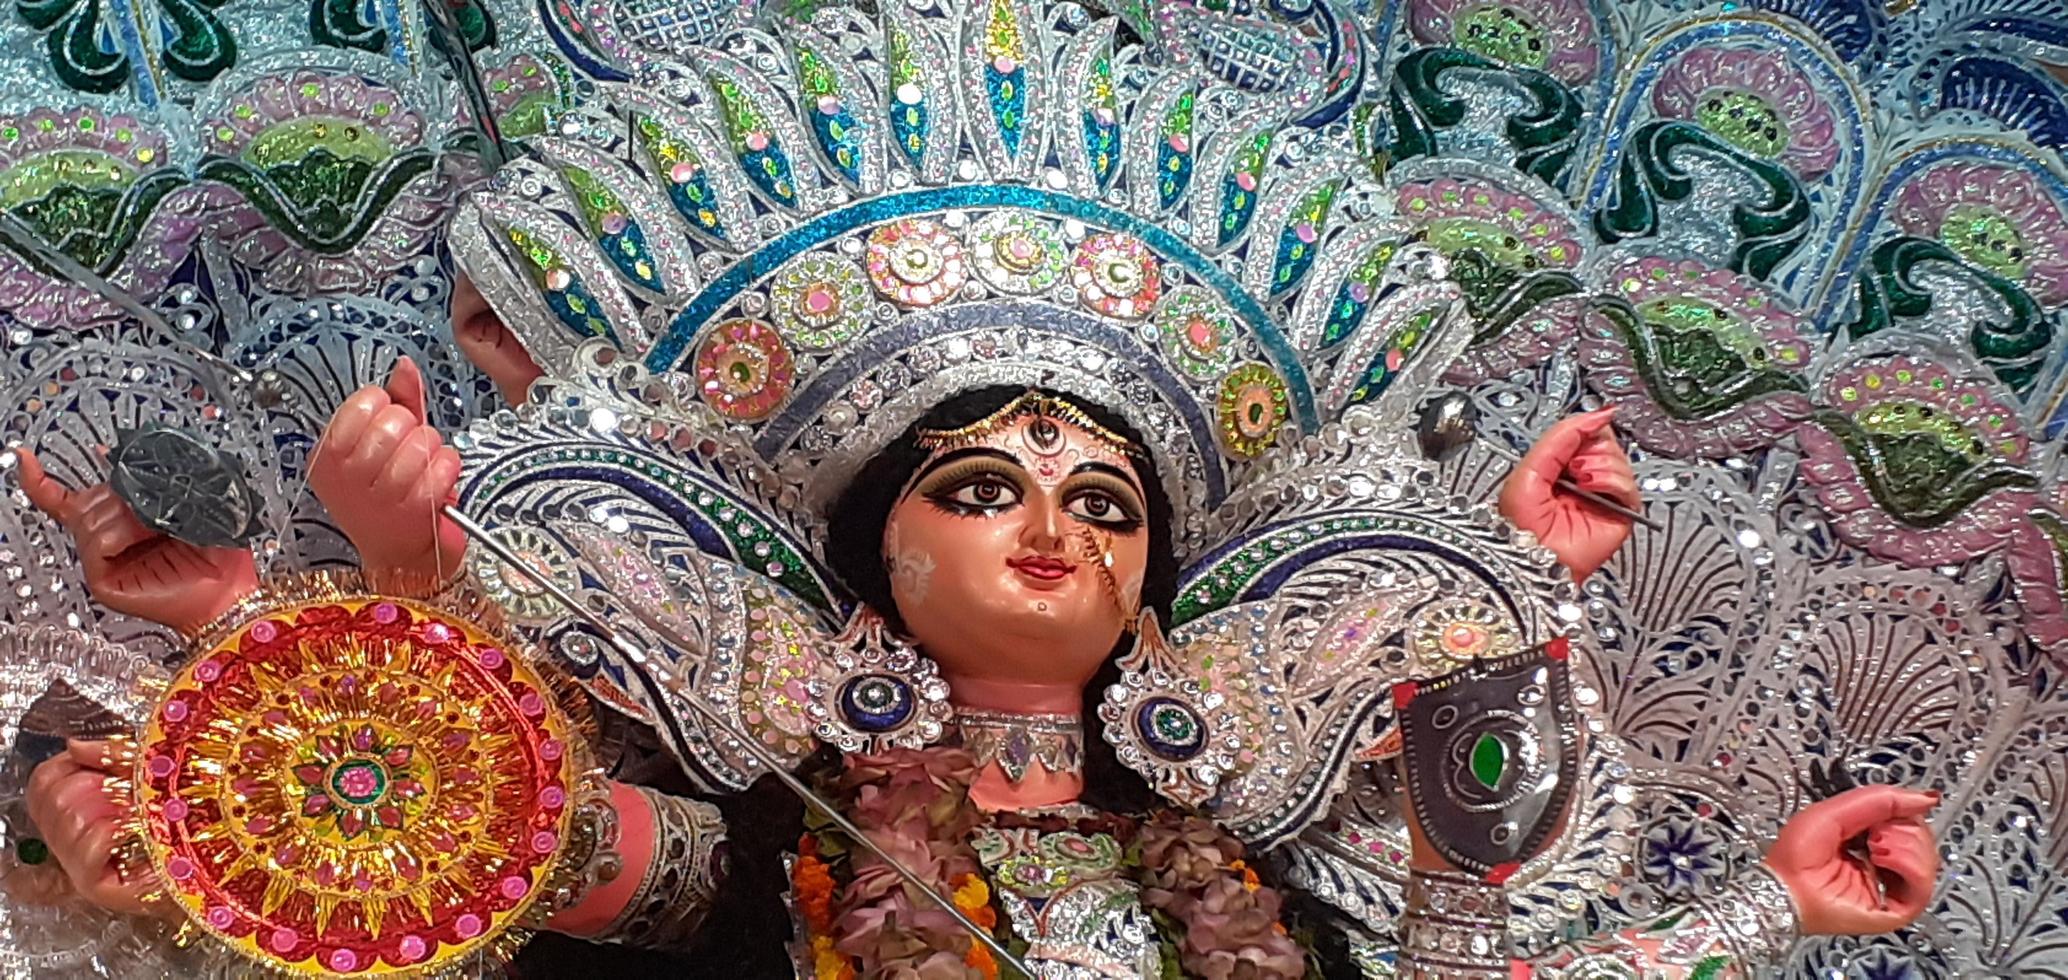 Durga idol fotografía de cerca durante el festival hindú bengalí de Durga Puja foto